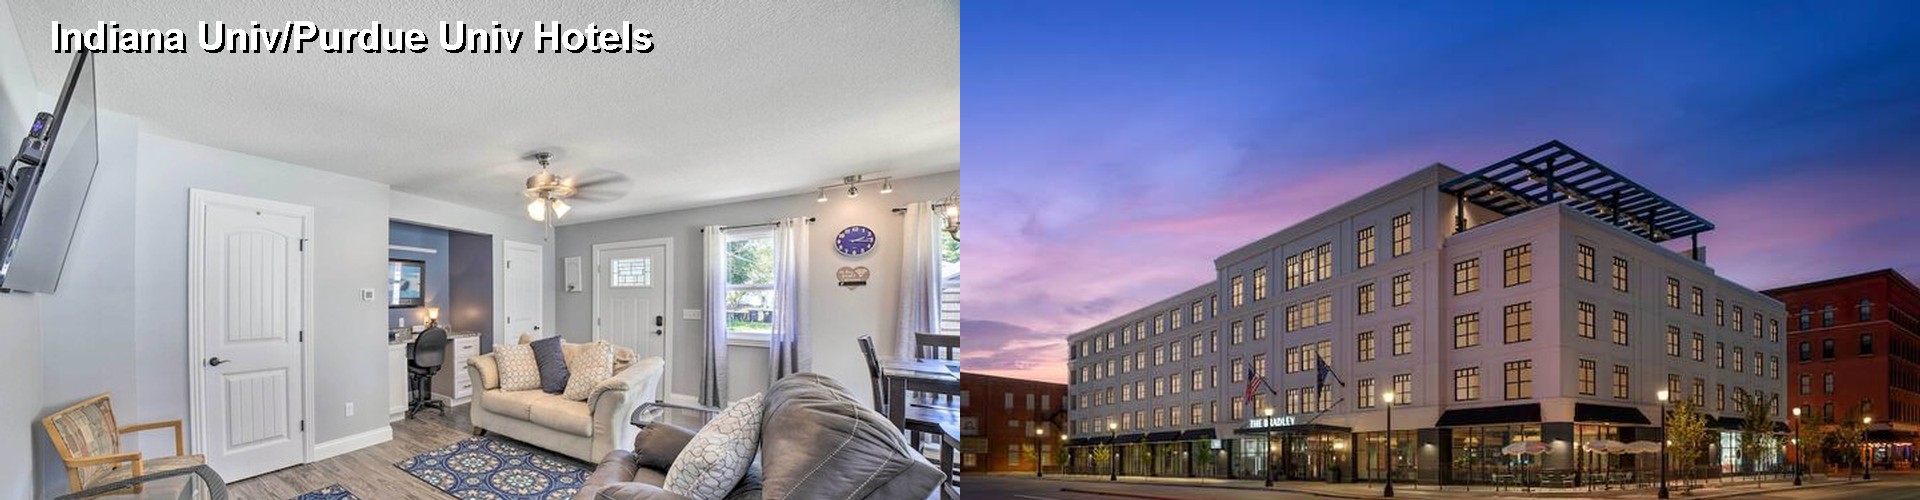 4 Best Hotels near Indiana Univ/Purdue Univ